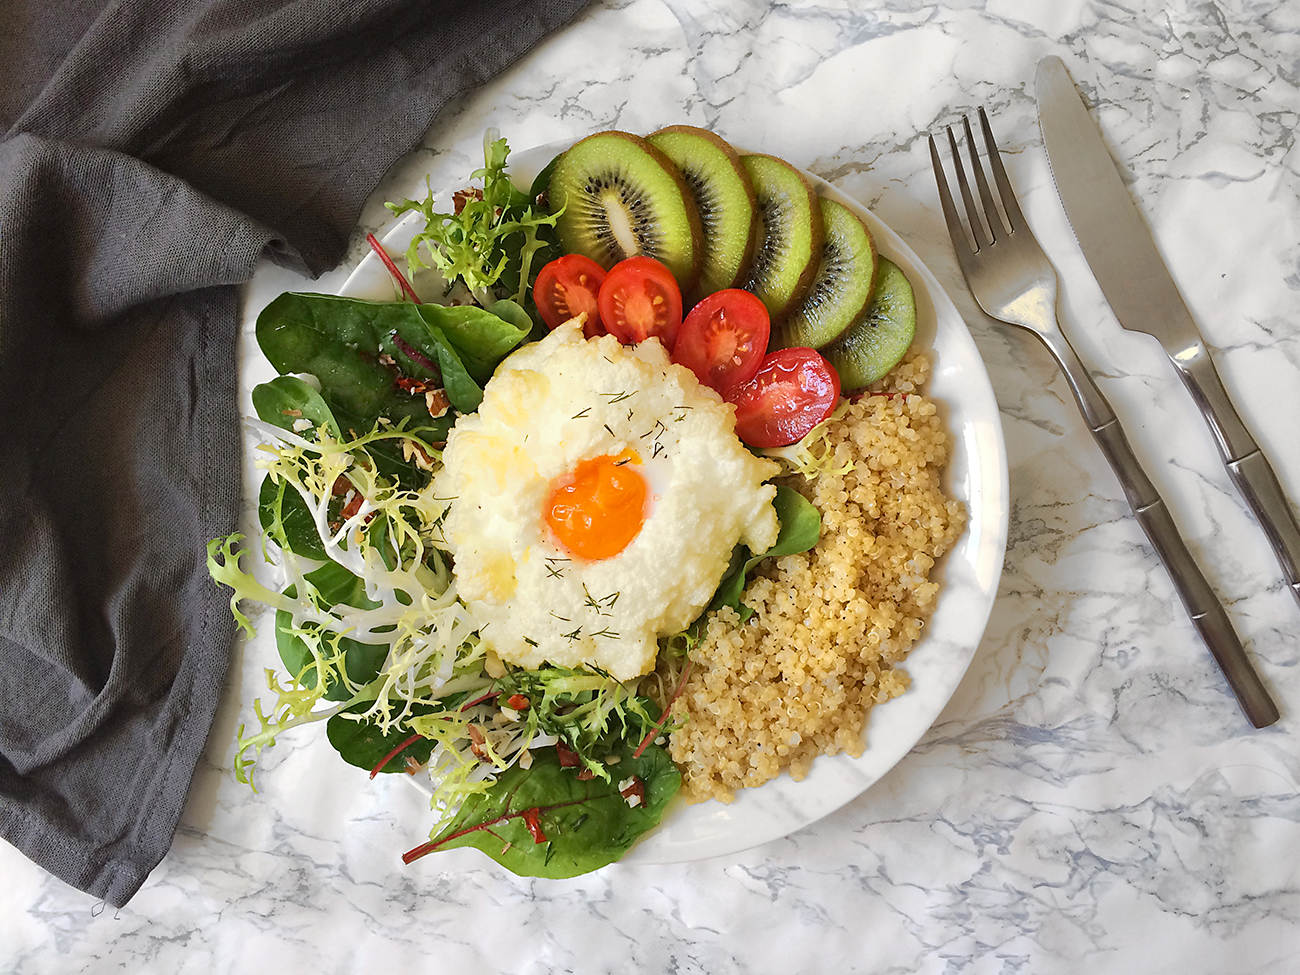 Recette spéciale brunch – le cloud egg, salade verte et quinoa